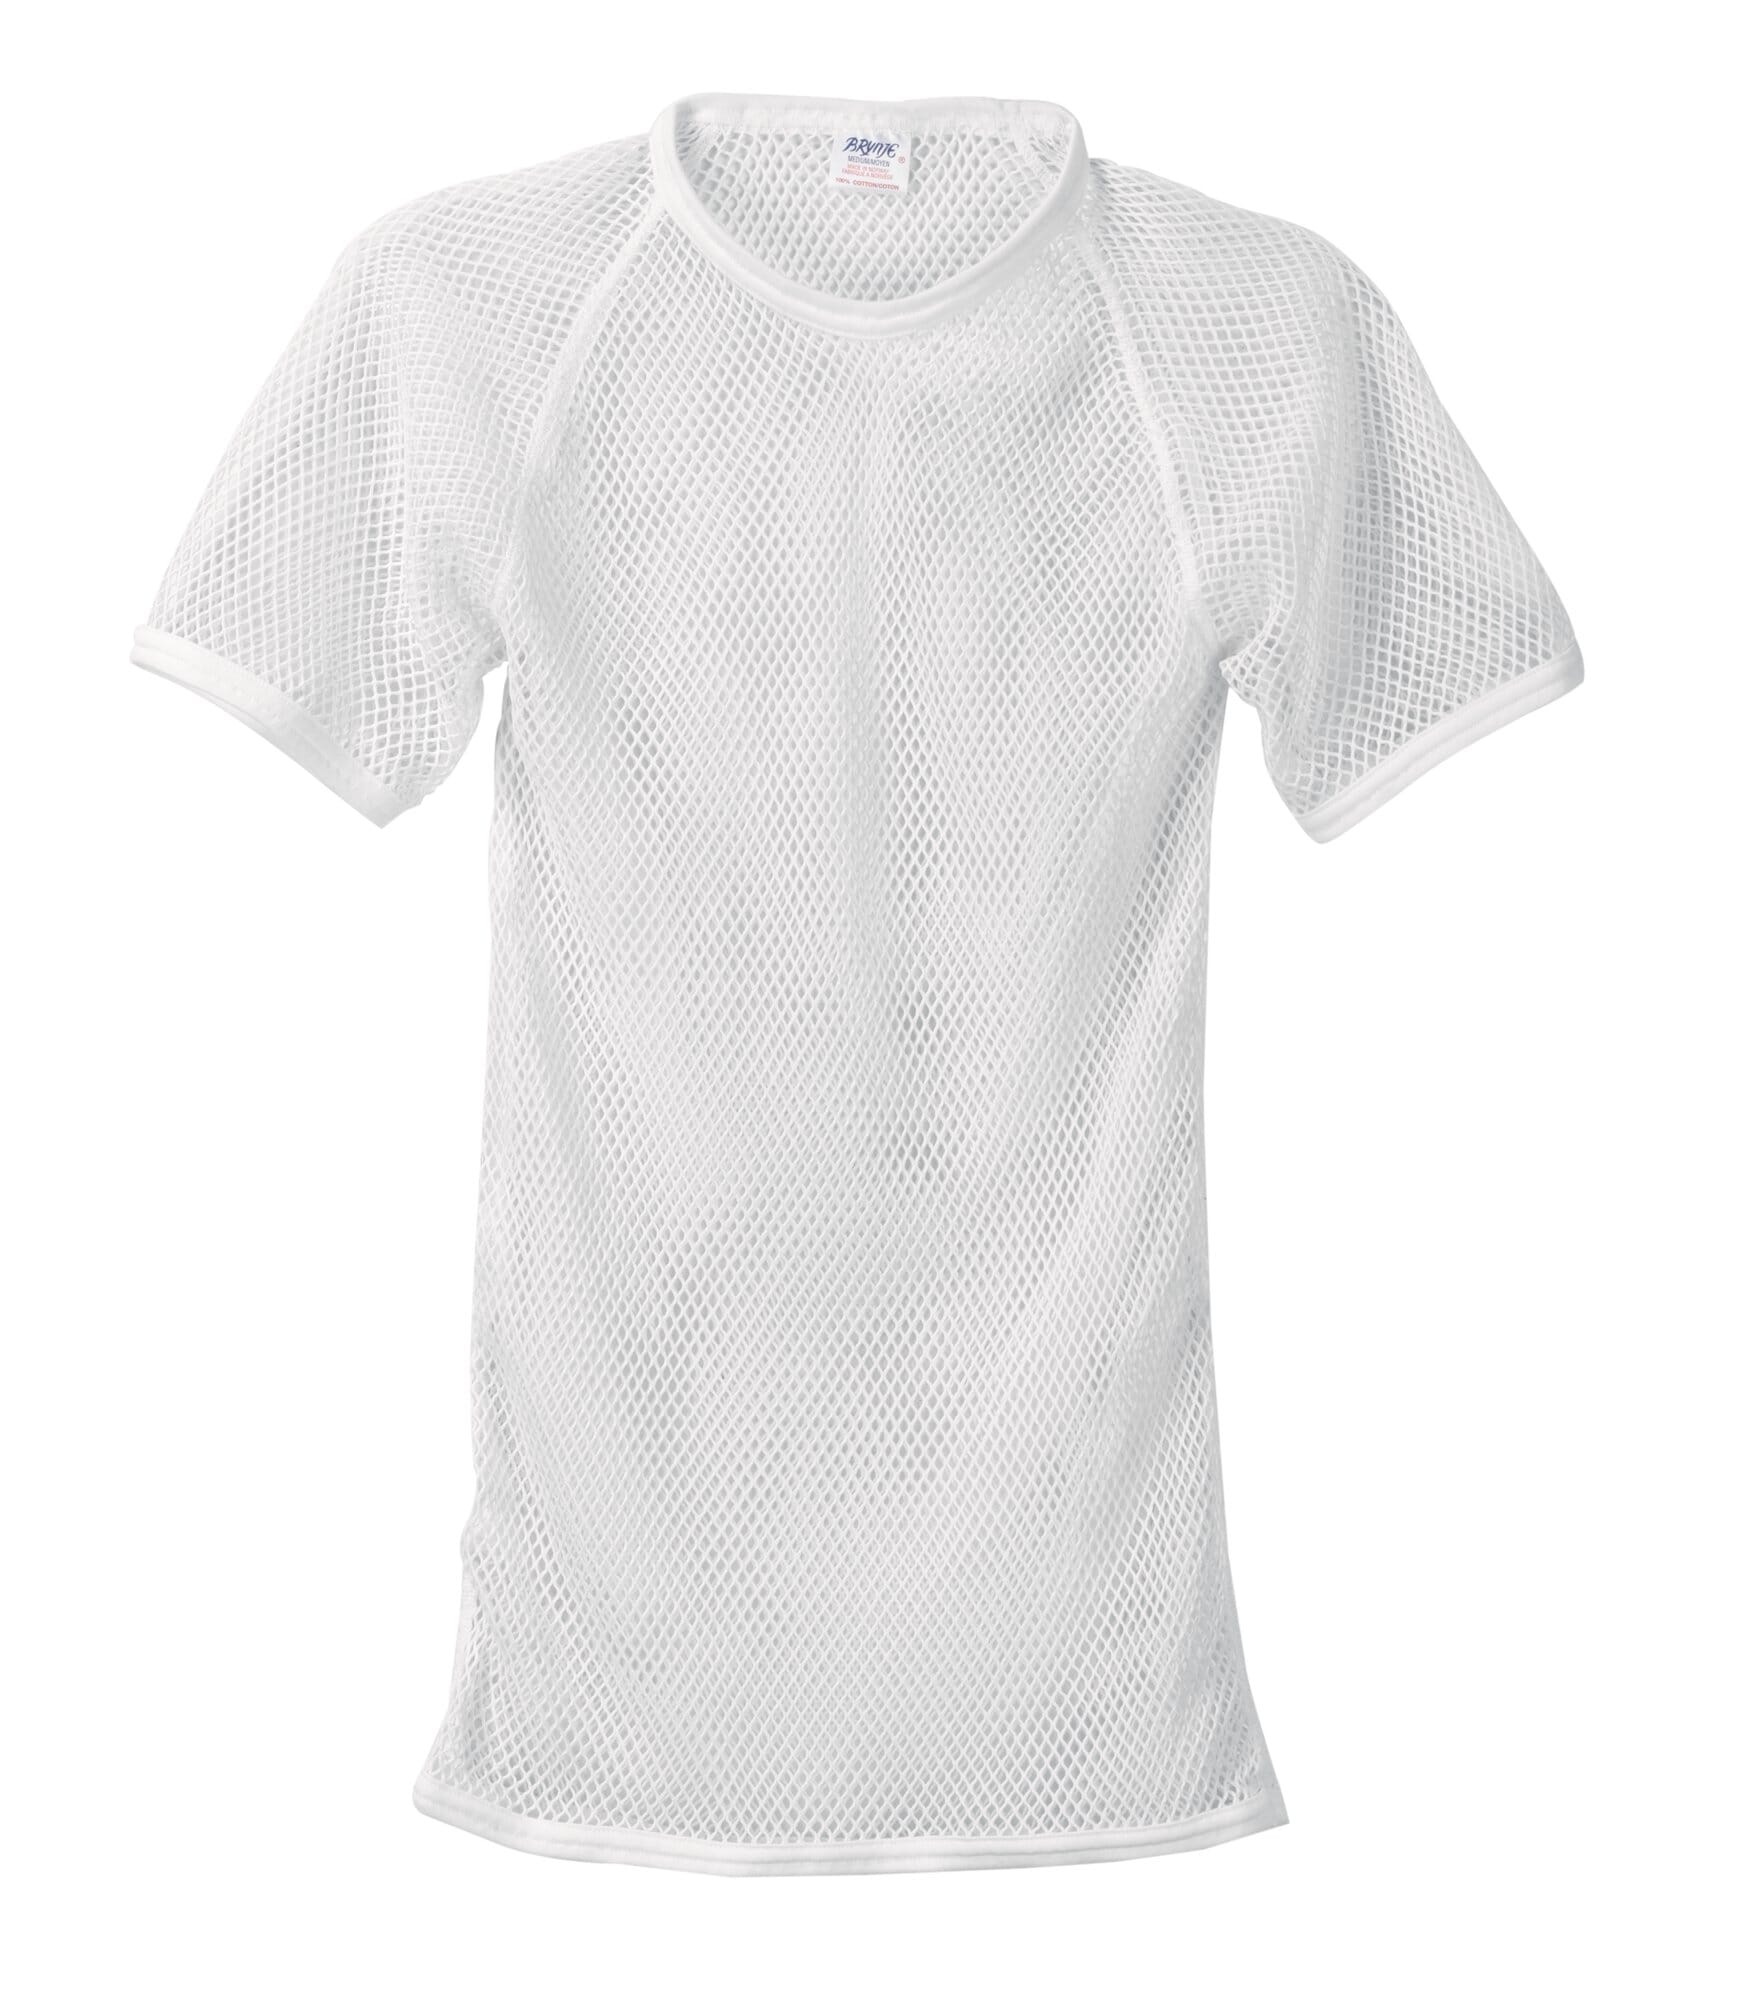 Netz-Unterhemd, Weiß